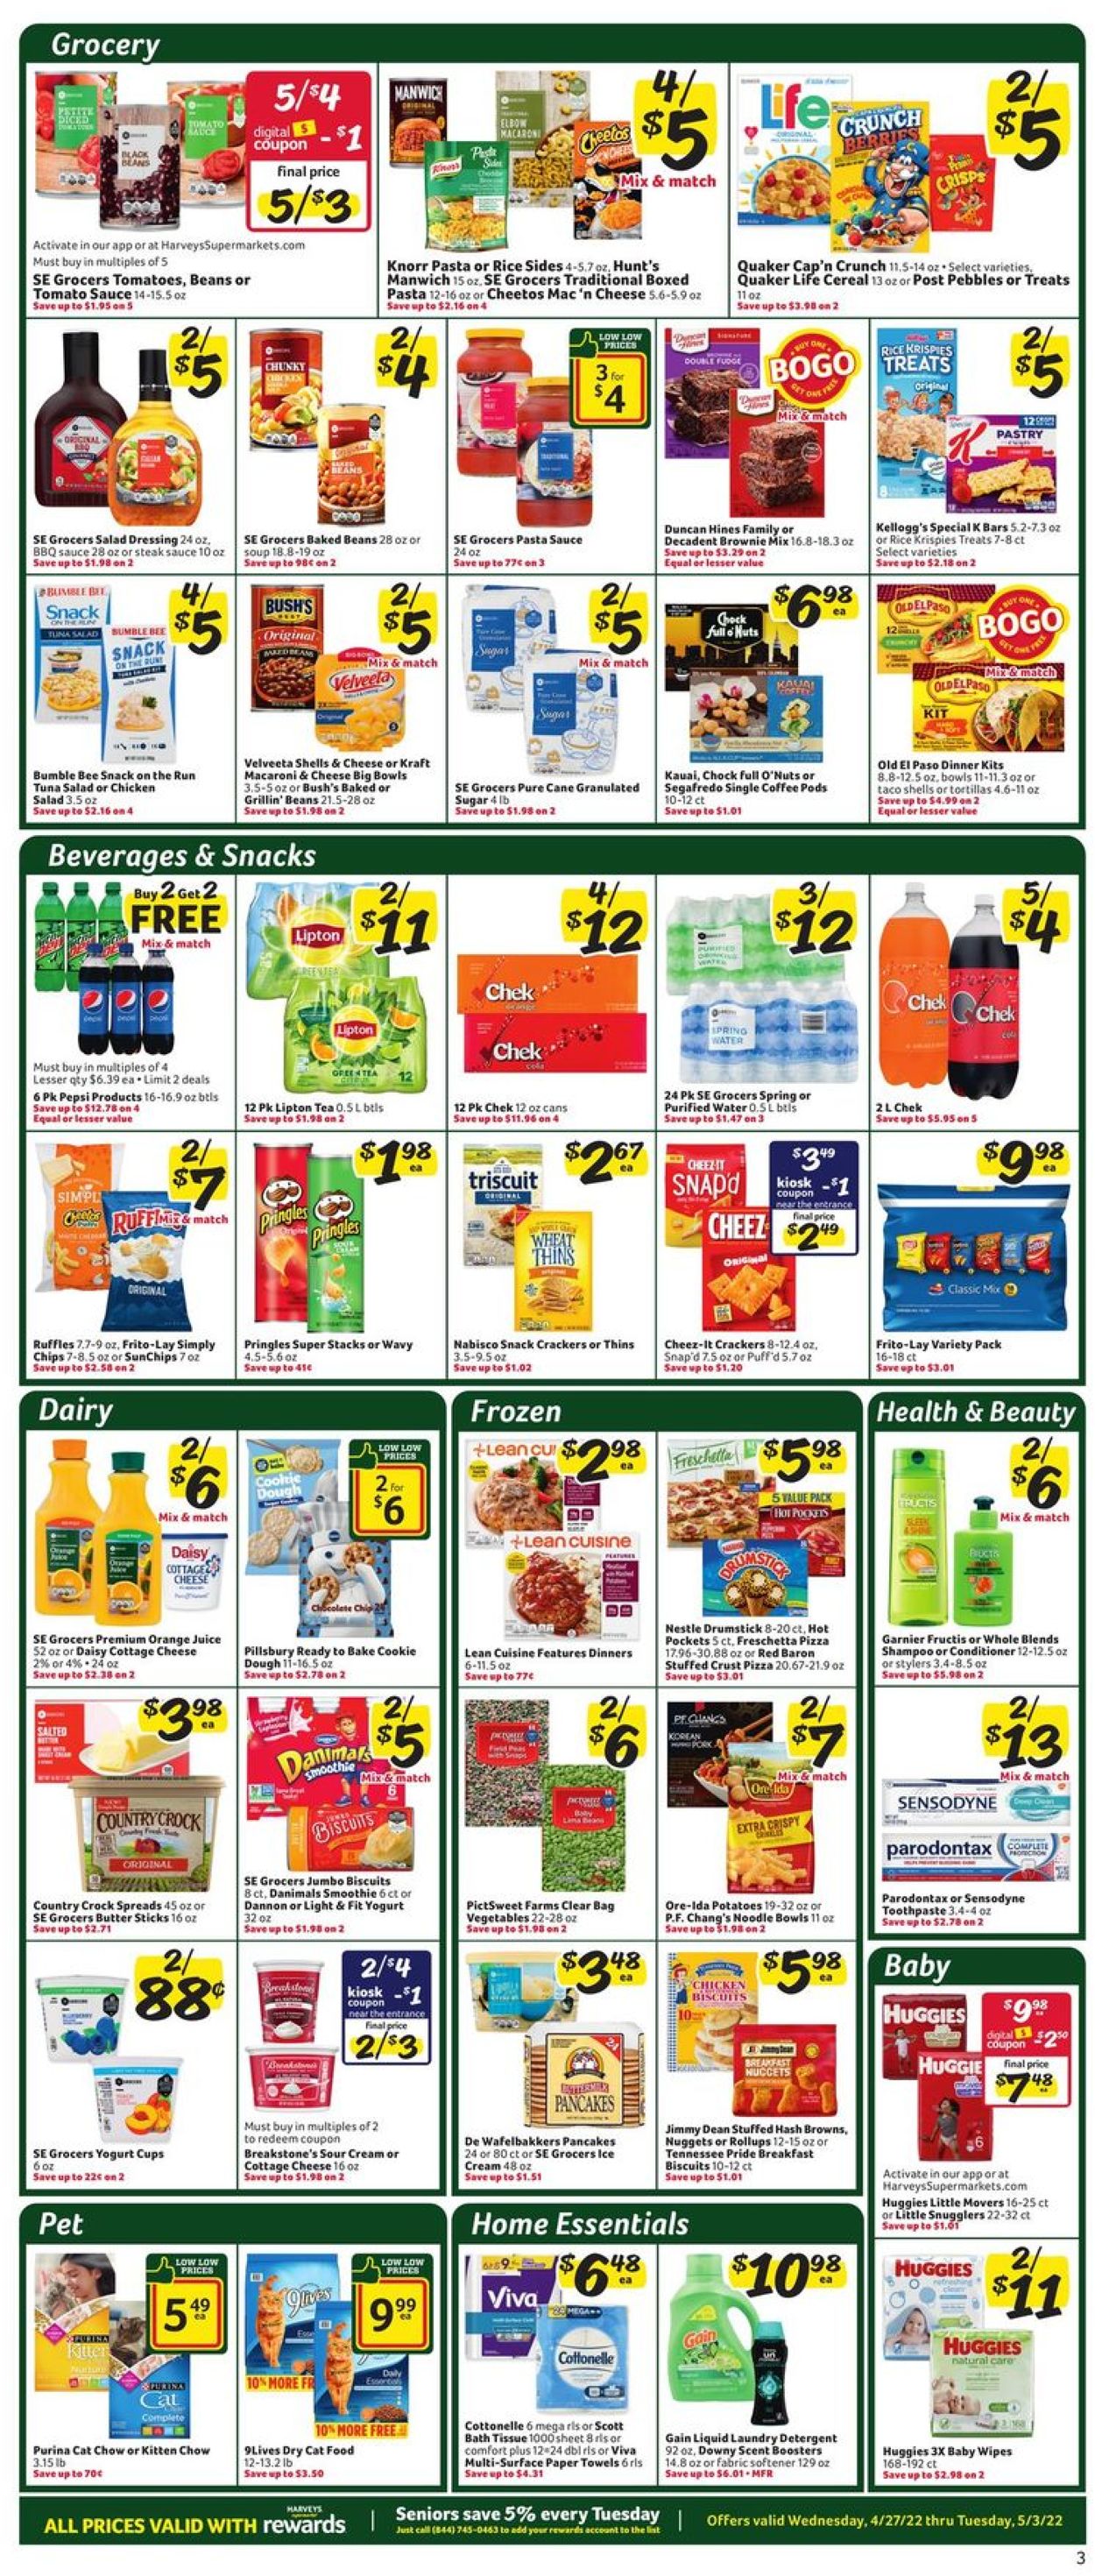 Catalogue Harveys Supermarket from 04/27/2022